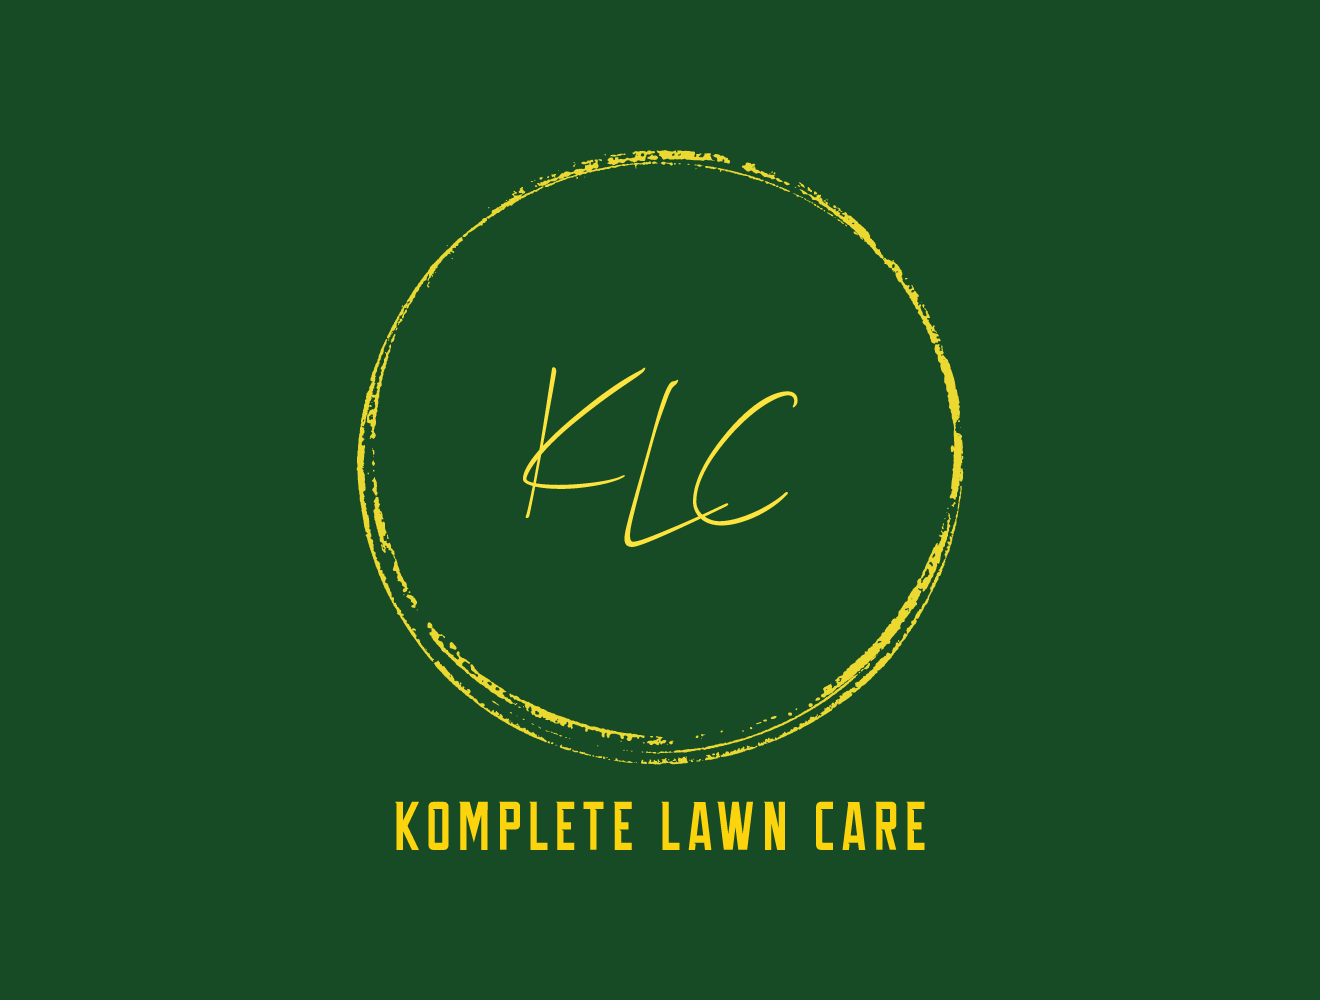 Komplete Lawn Care Logo